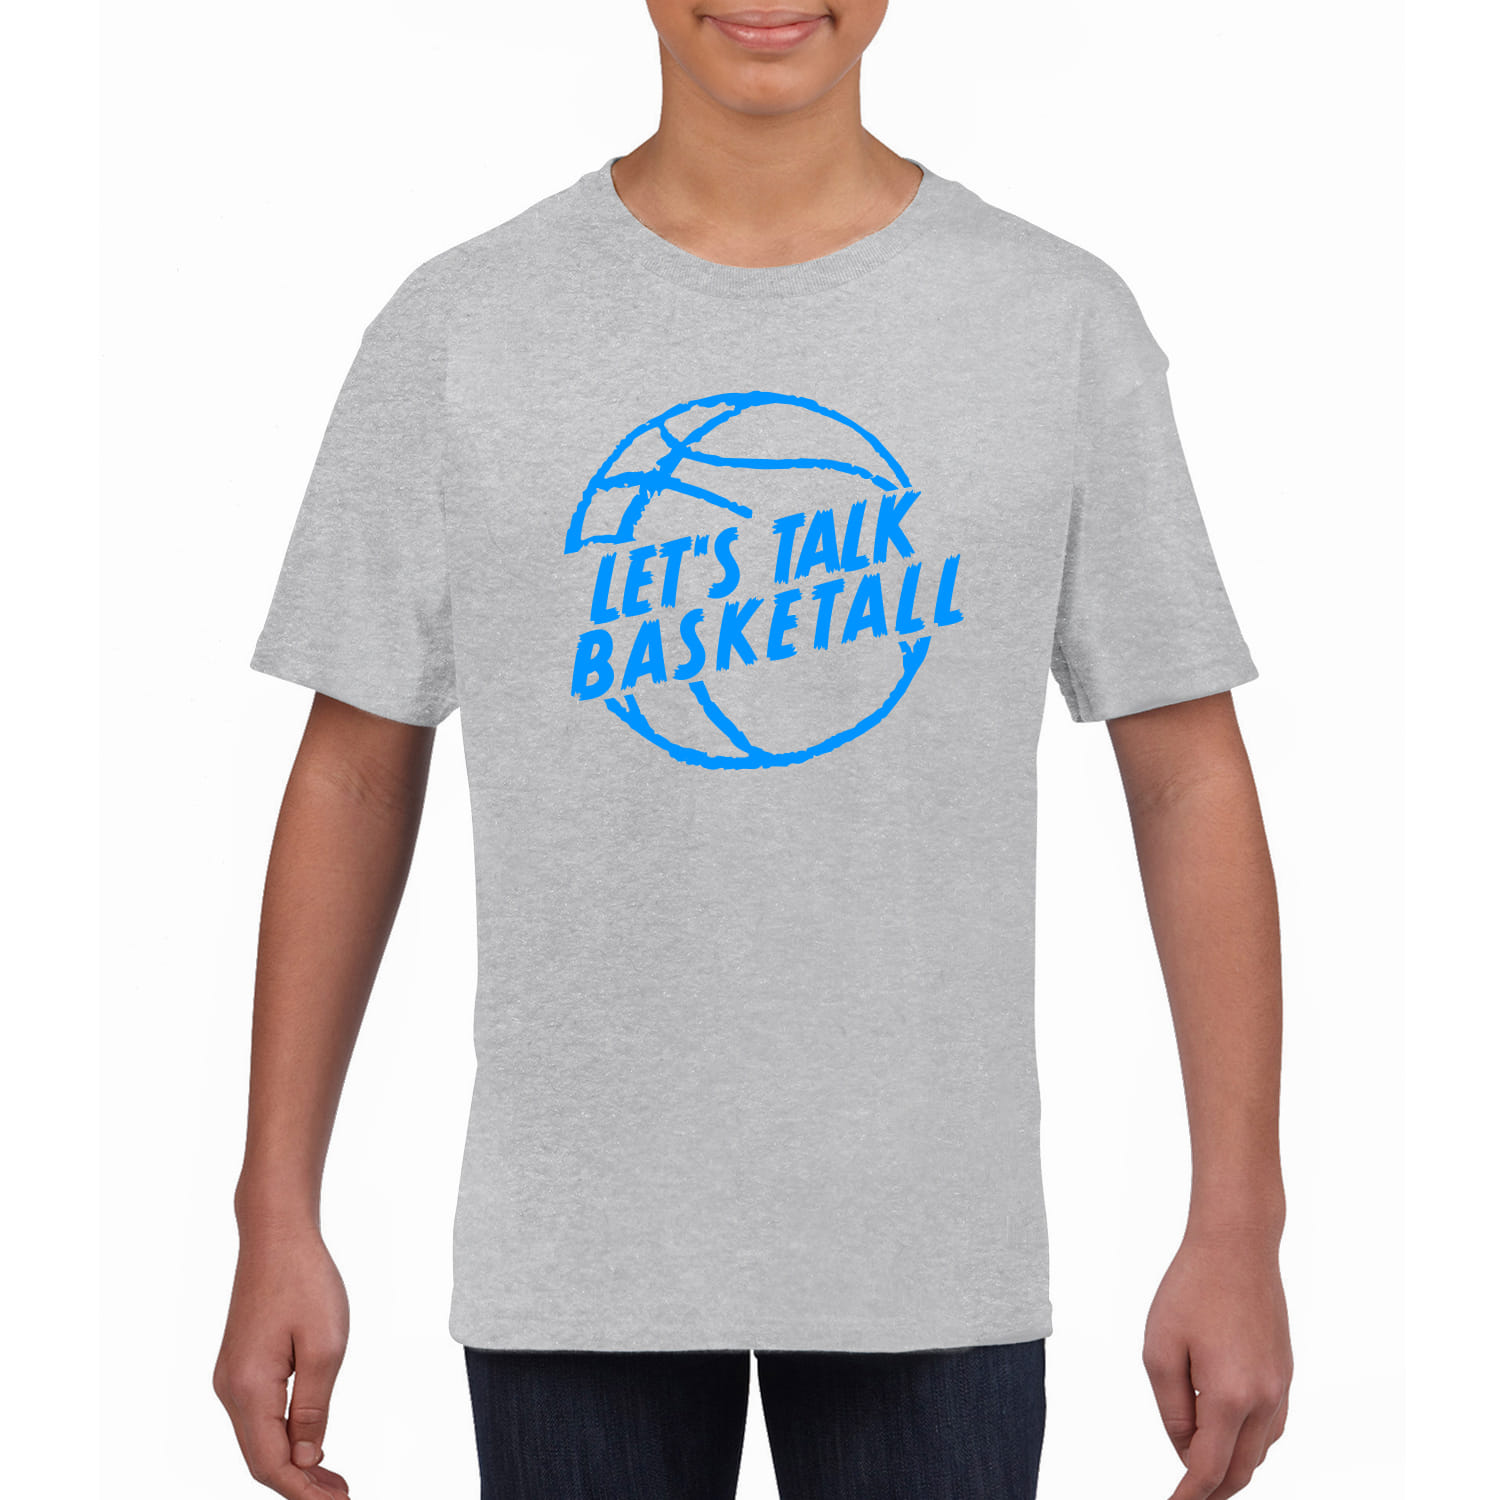 Kinder T-Shirt "Let's talk Basketball"